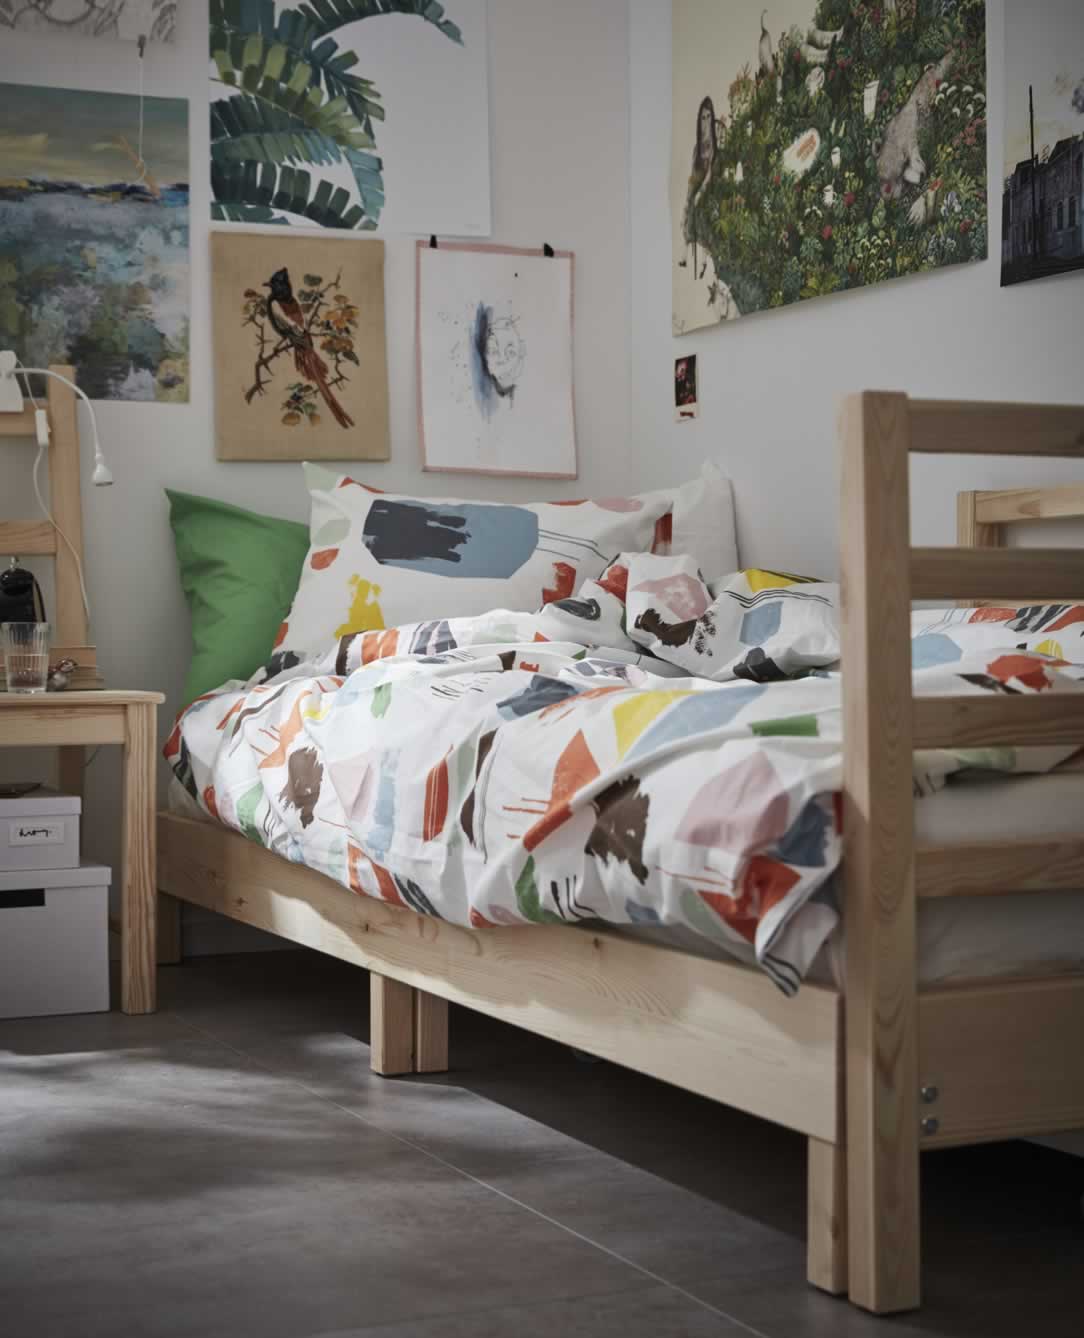 IKEA Ideas - Fresh and artsy dorm room ideas